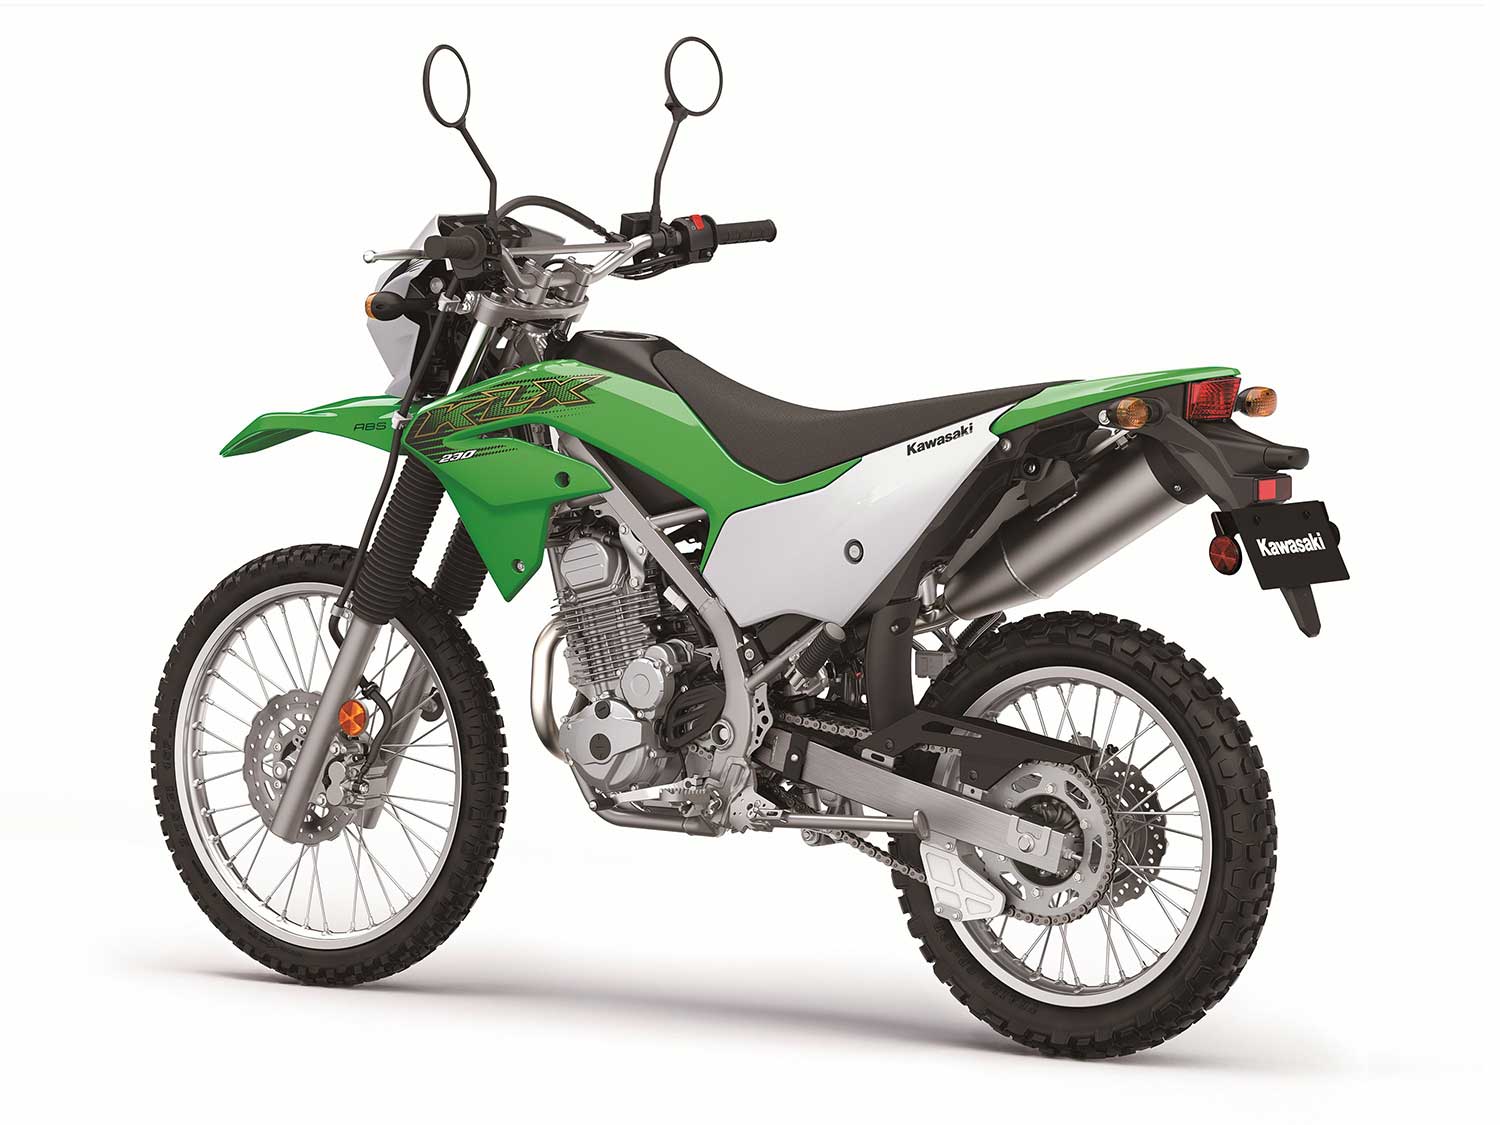 Kawasaki Introduces 2020 Off-Road Dual Models | Dirt Rider